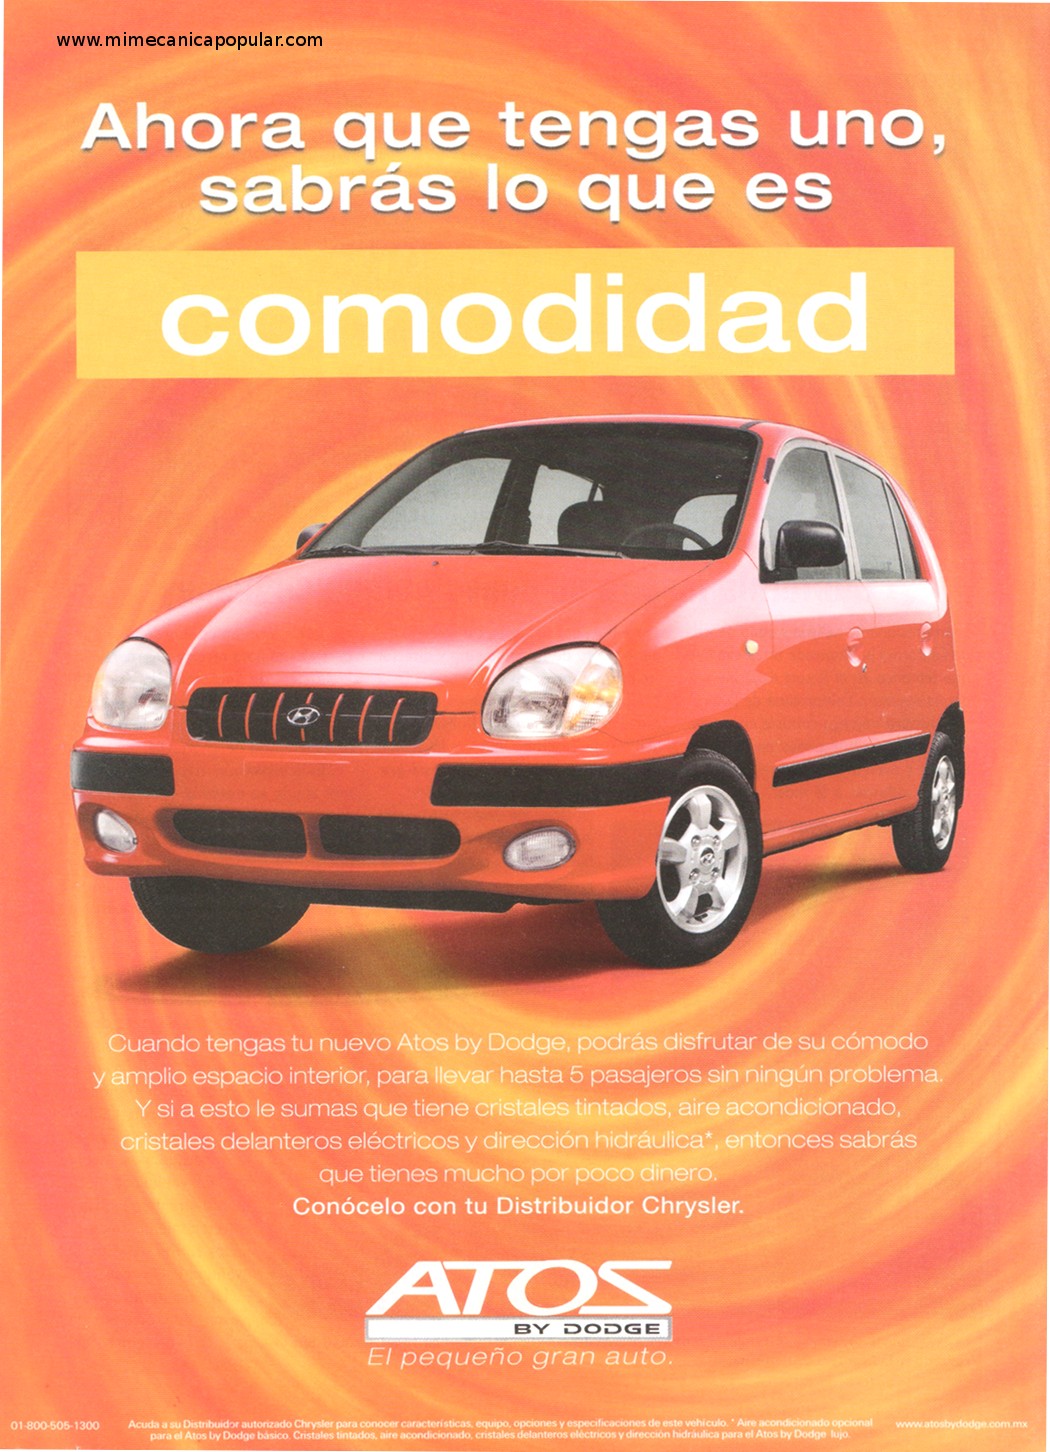 Publicidad - Dodge Atos - Diciembre 2000